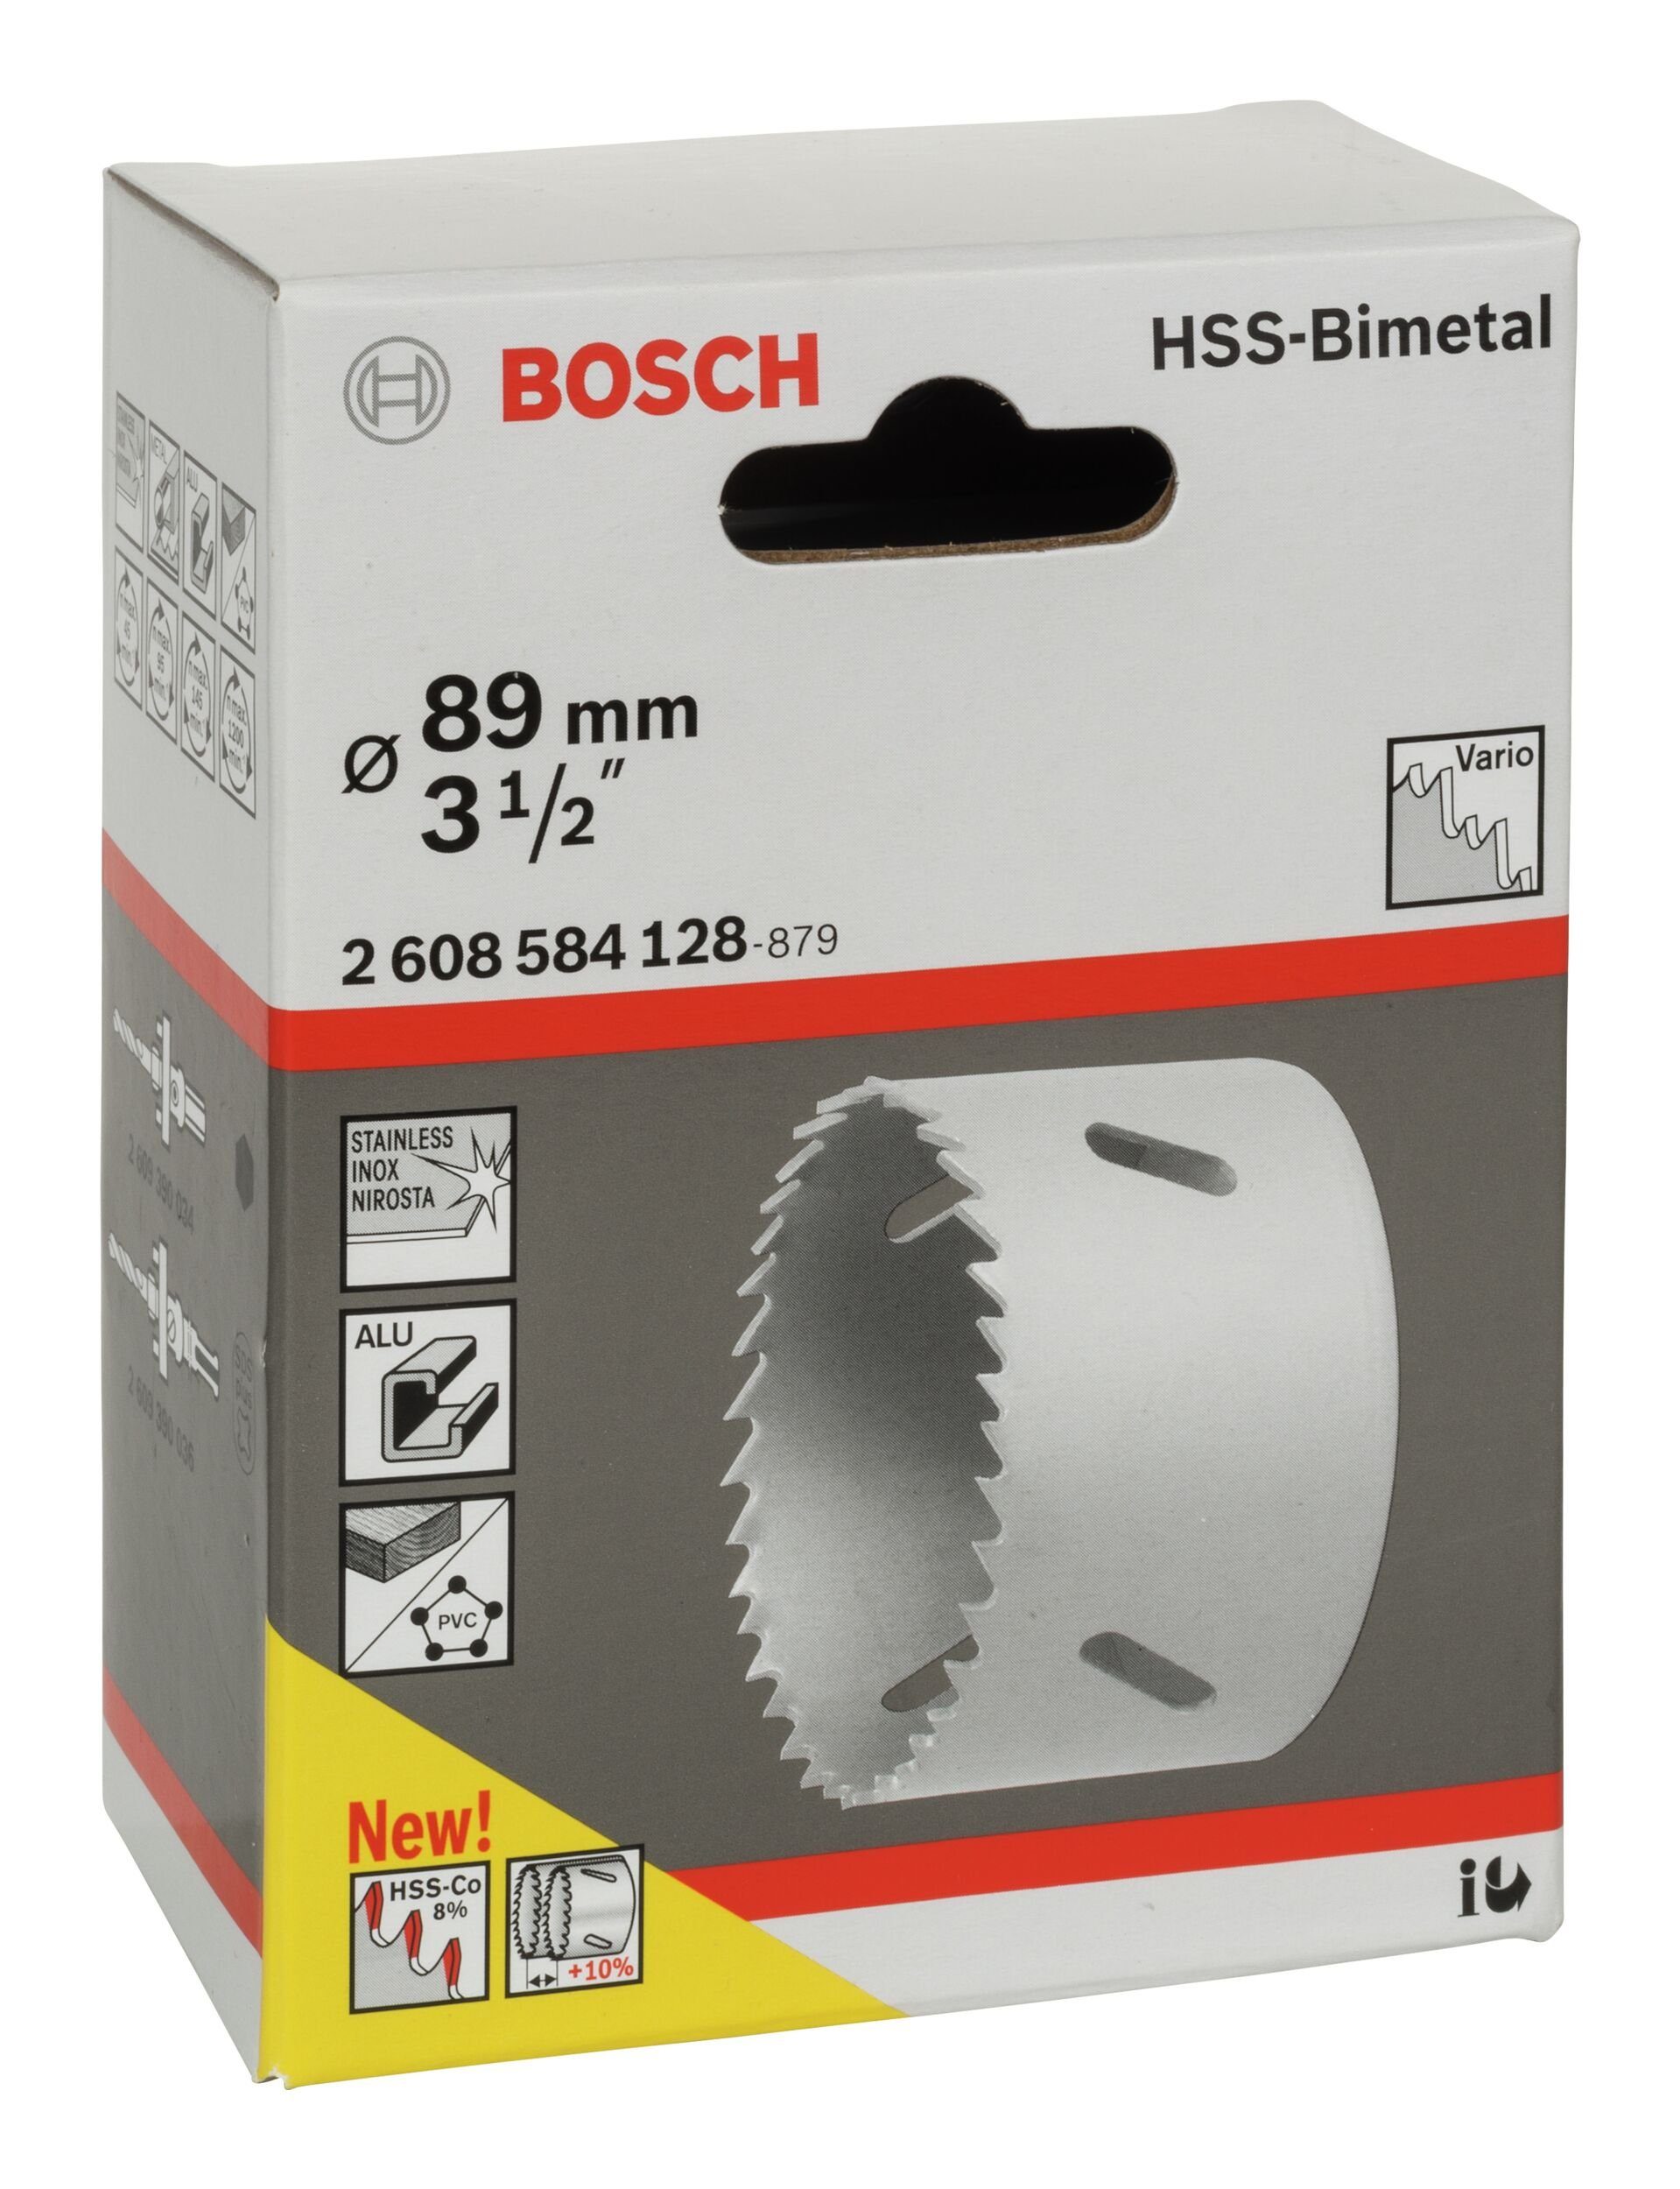 - HSS-Bimetall 1/2" mm, Standardadapter für Lochsäge, BOSCH Ø 3 / 89